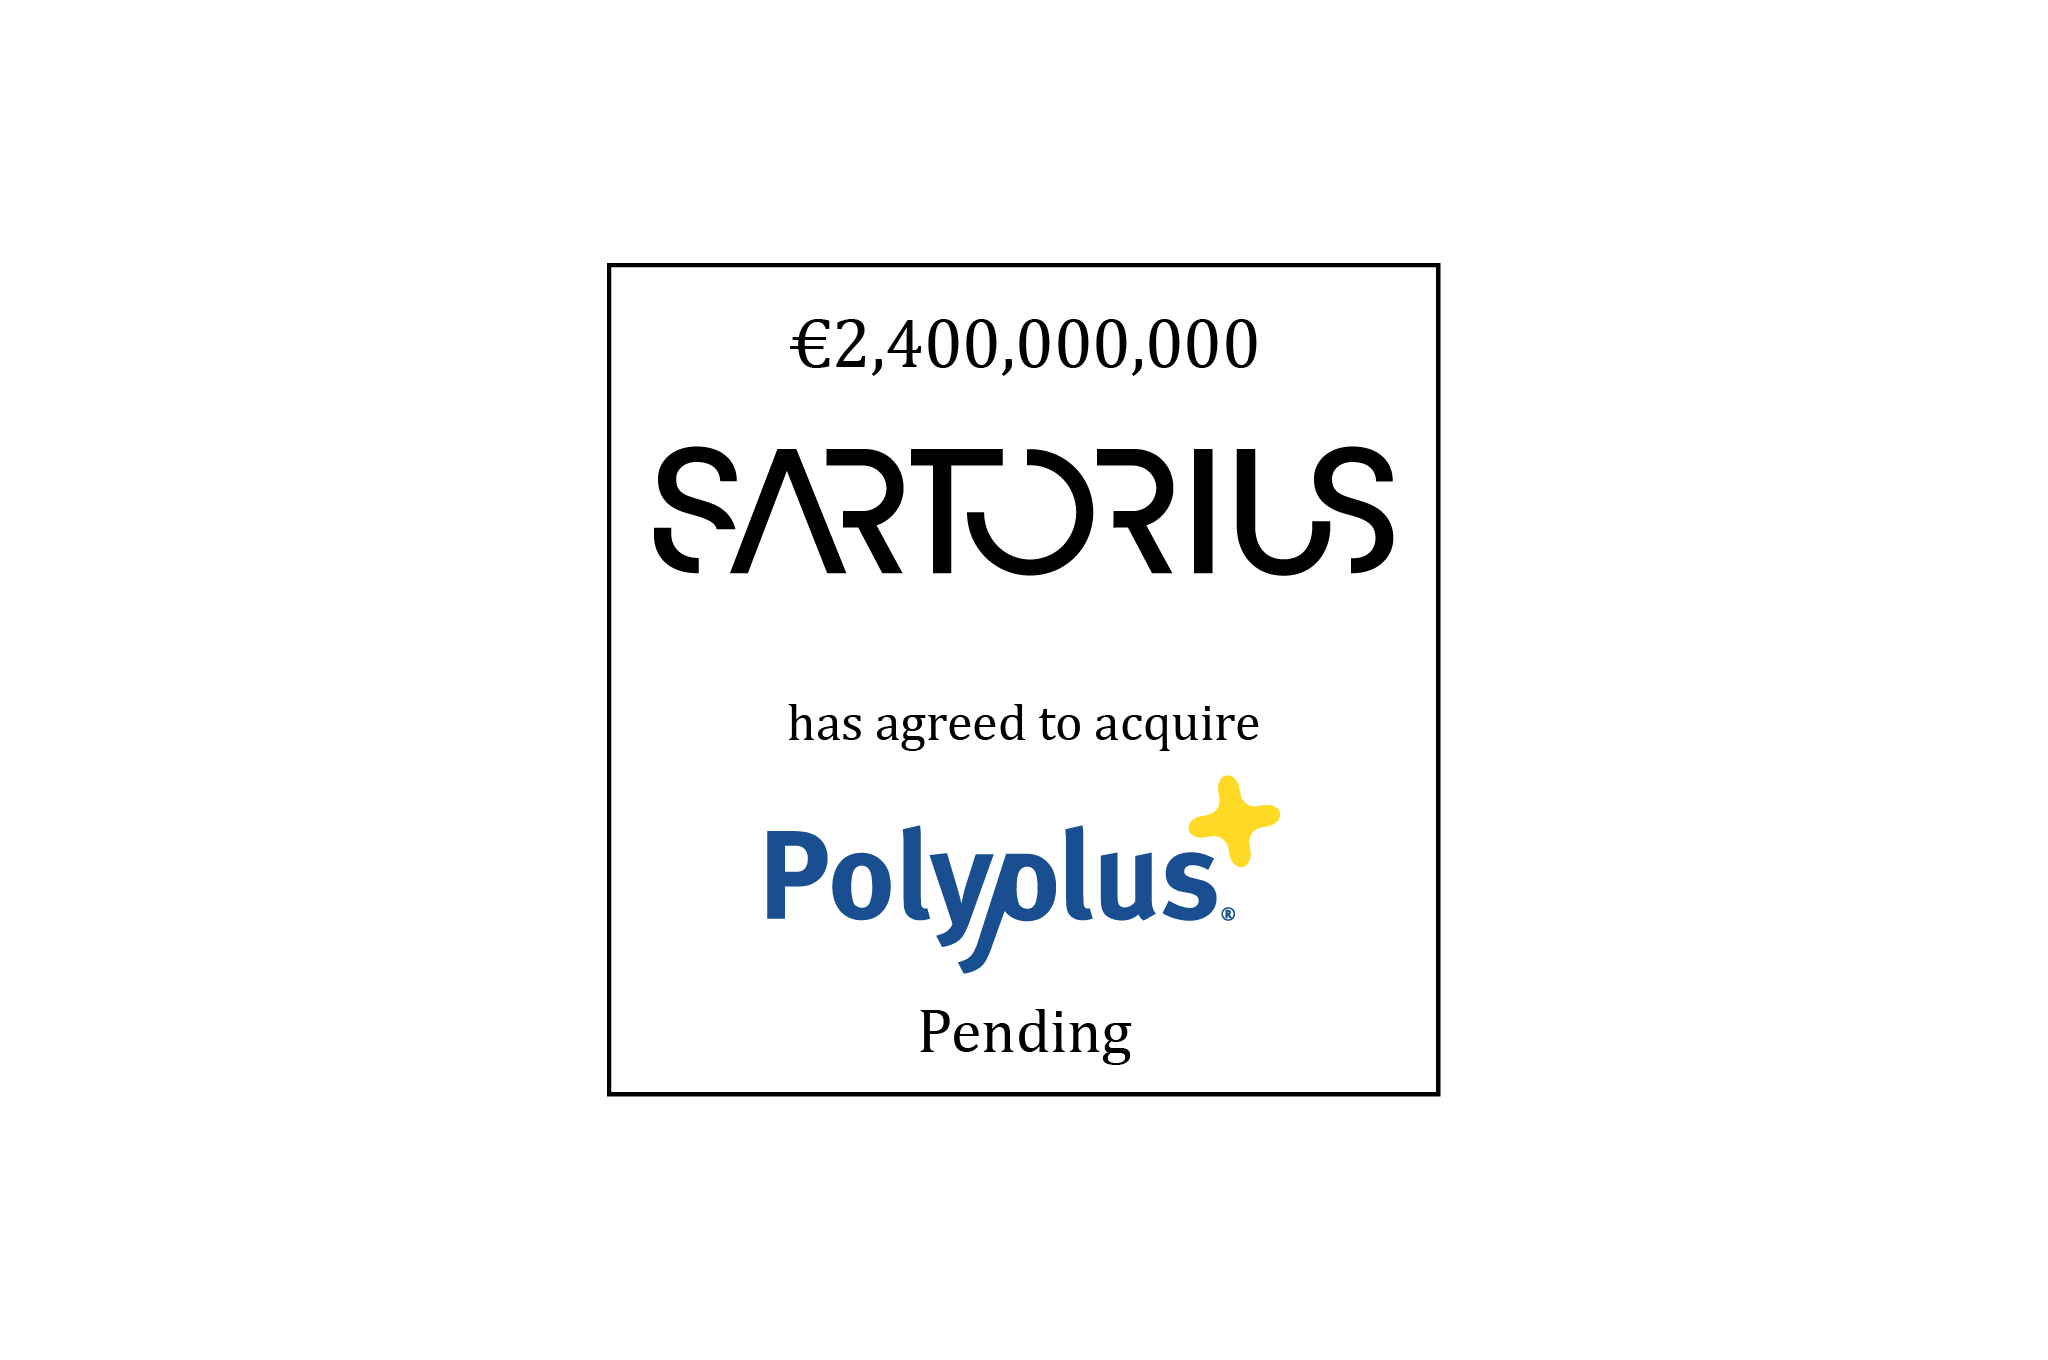 2.4 B Euro | Sartorius Stedim Biotech (logo) Has Agreed to Acquire Polyplus (logo) | Pending